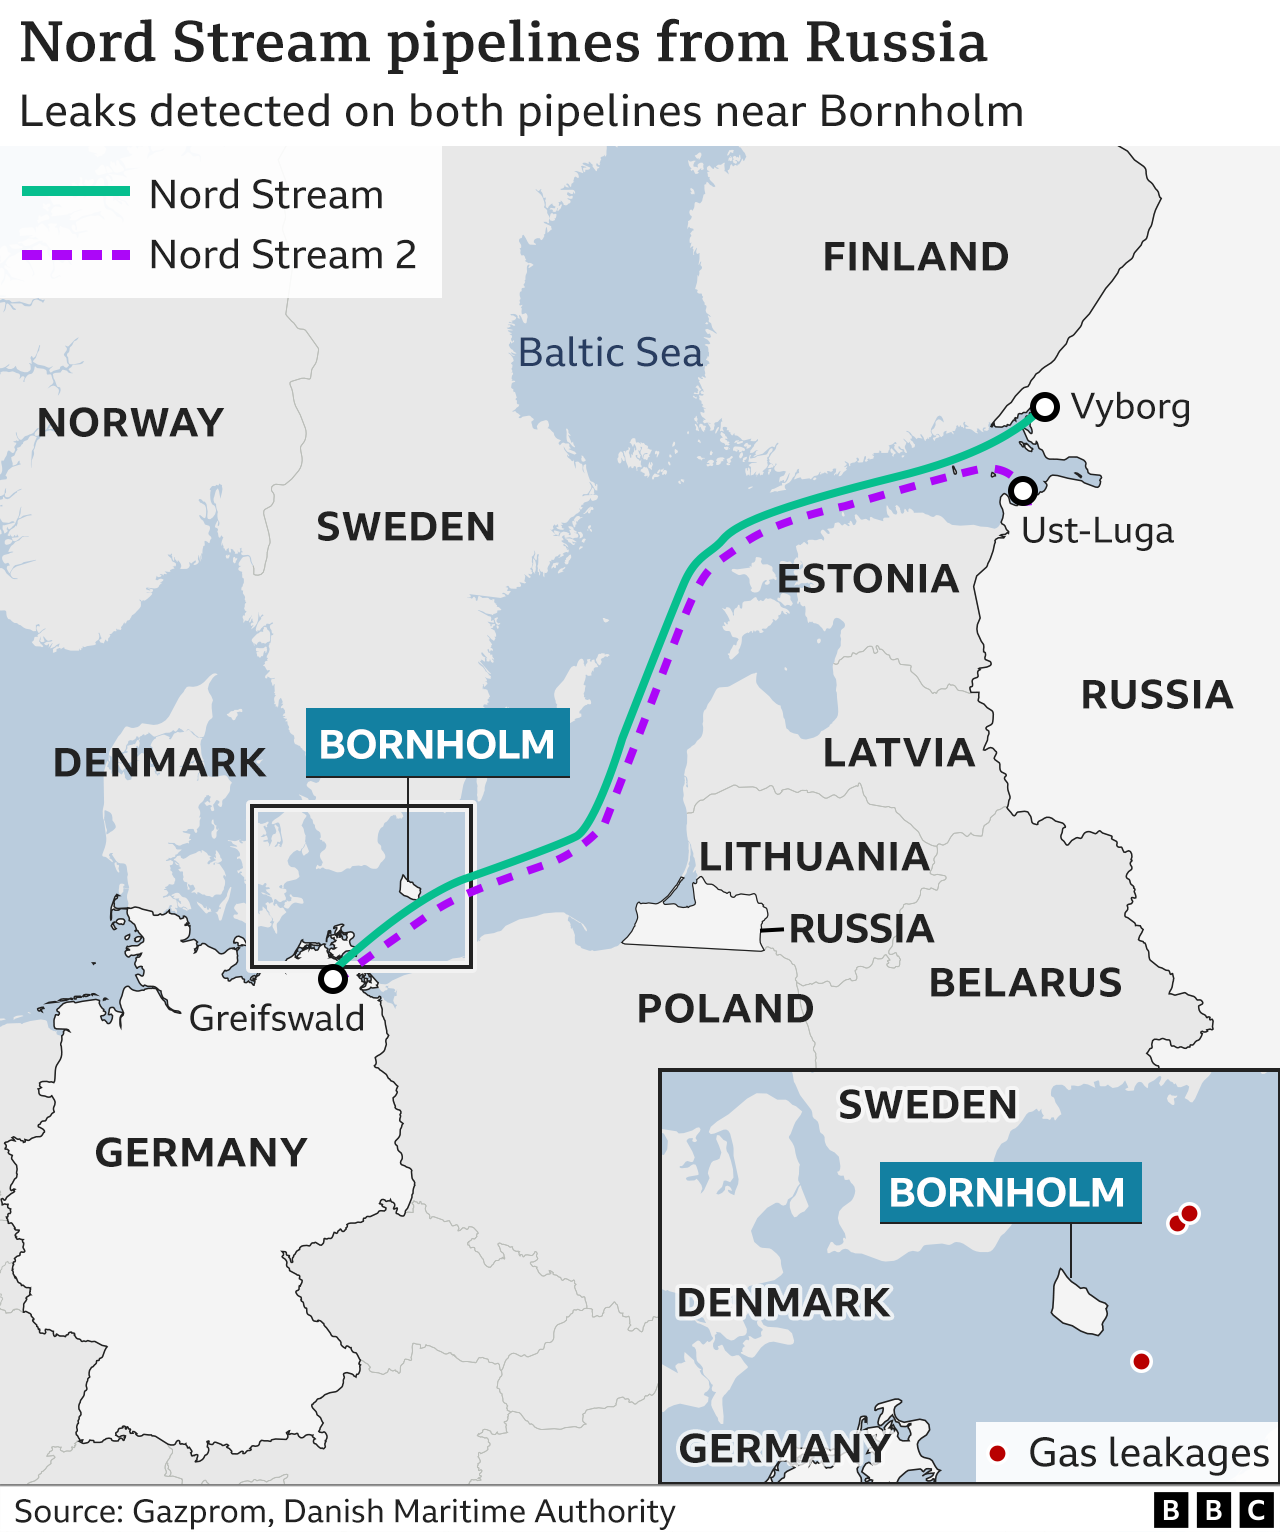 Nord Stream leaks: Sabotage to blame, says EU - BBC News